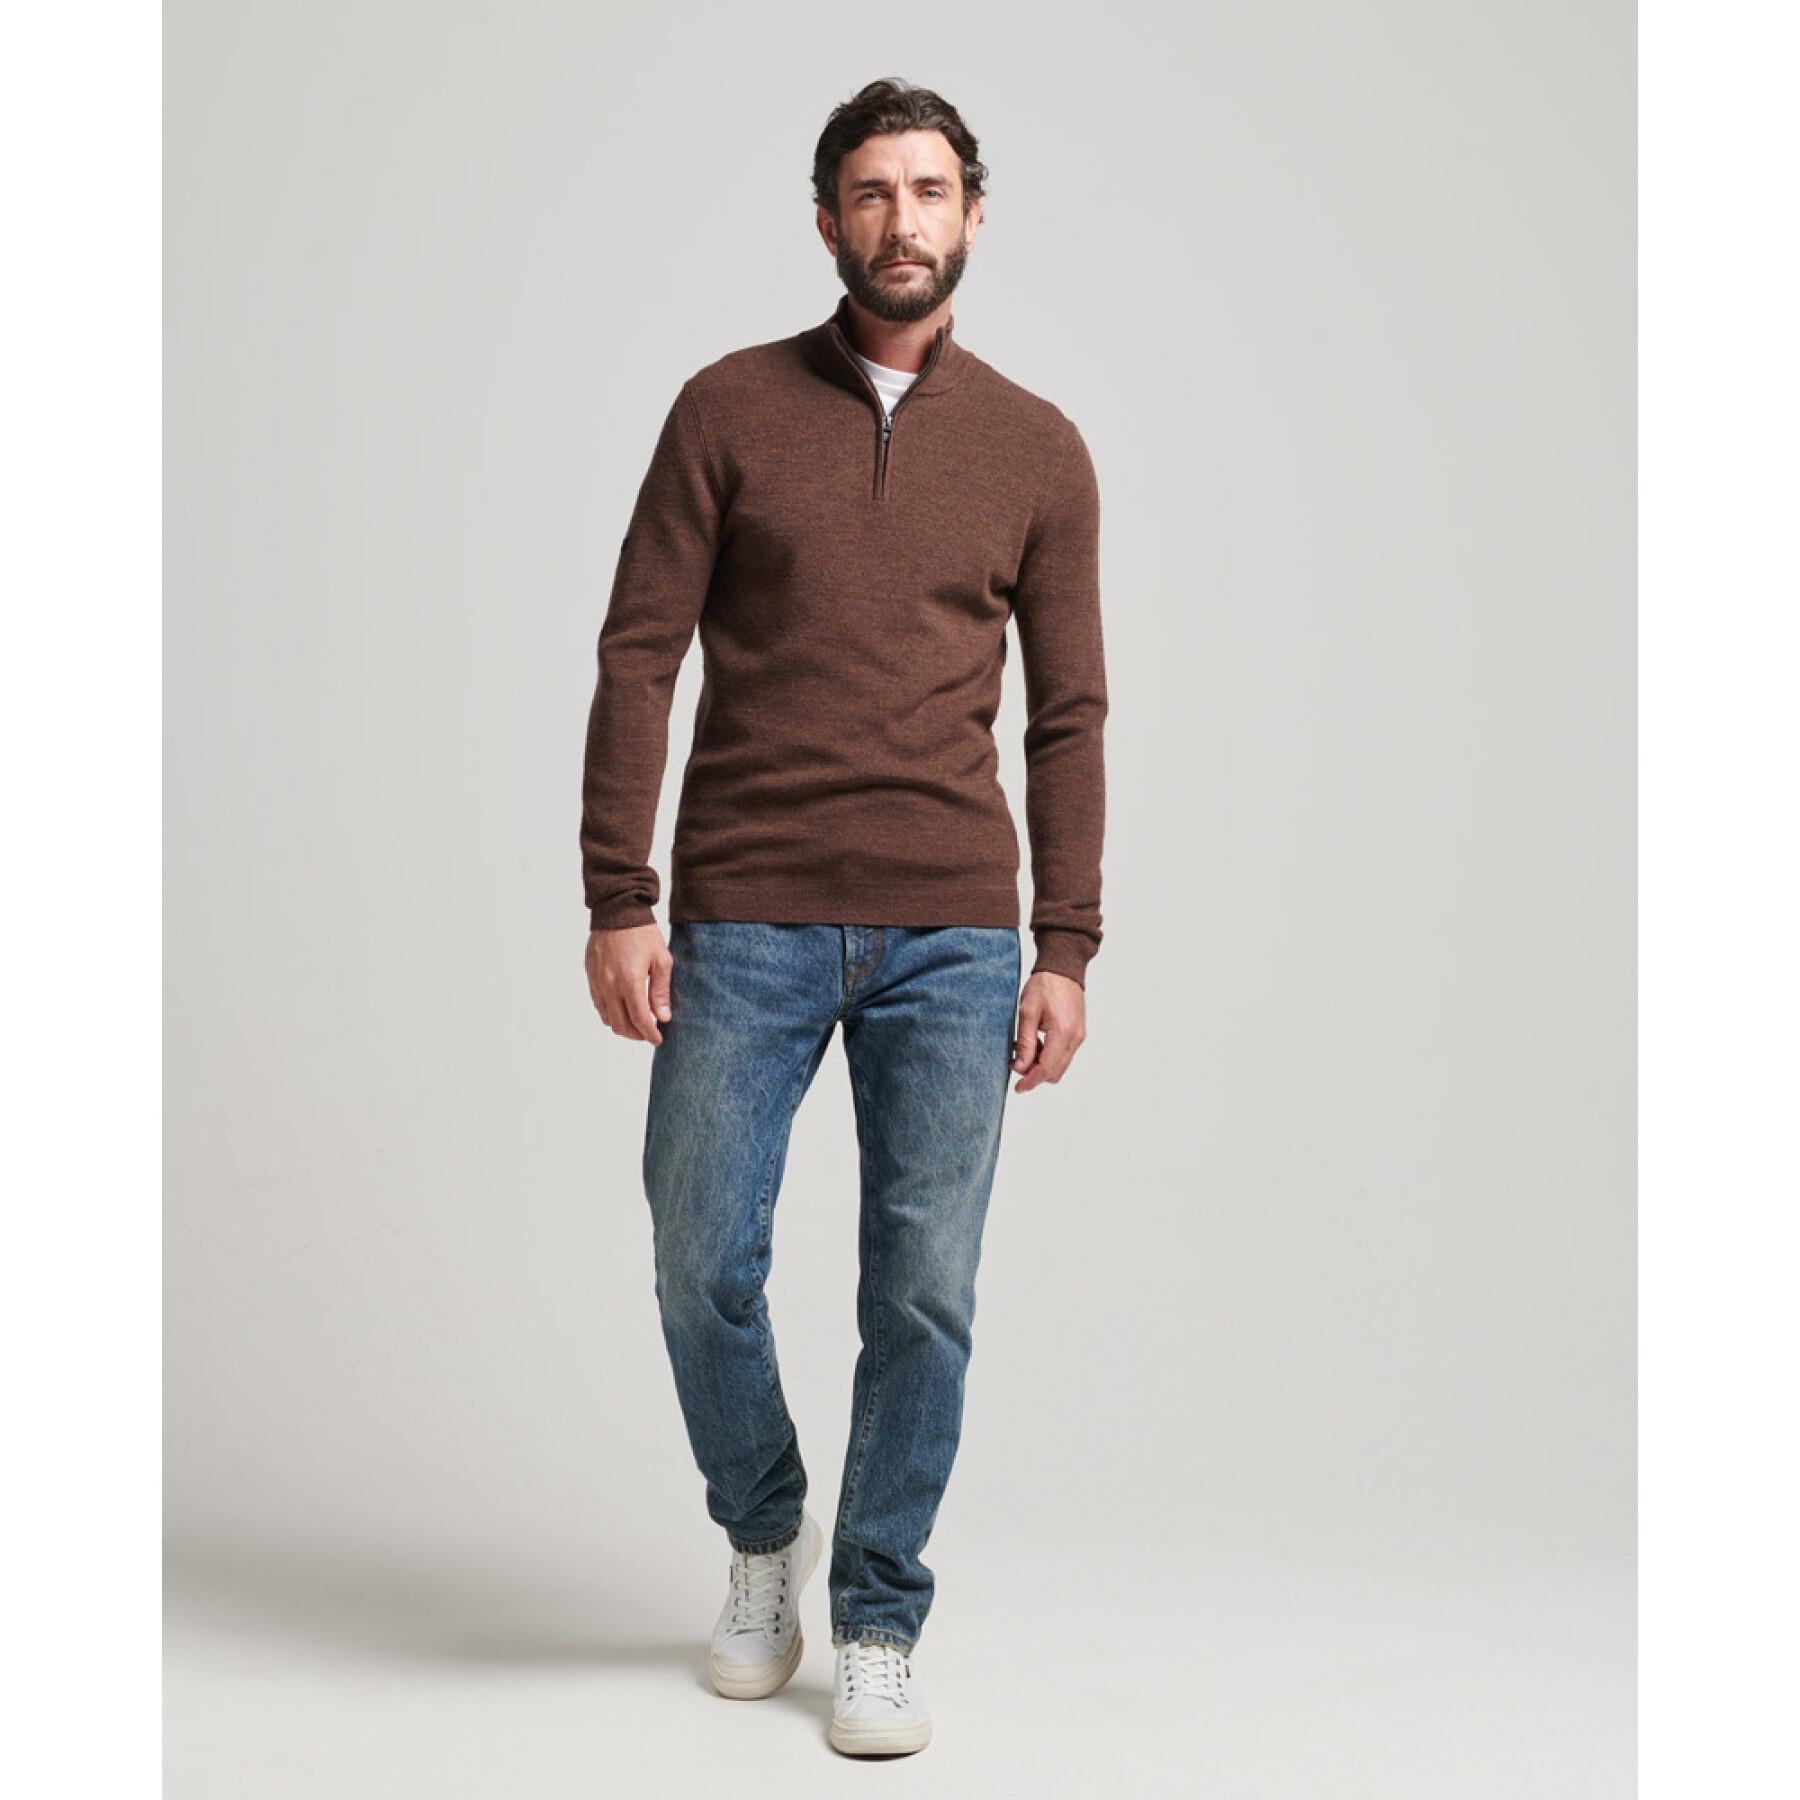 Merino wol semi-sweater Superdry